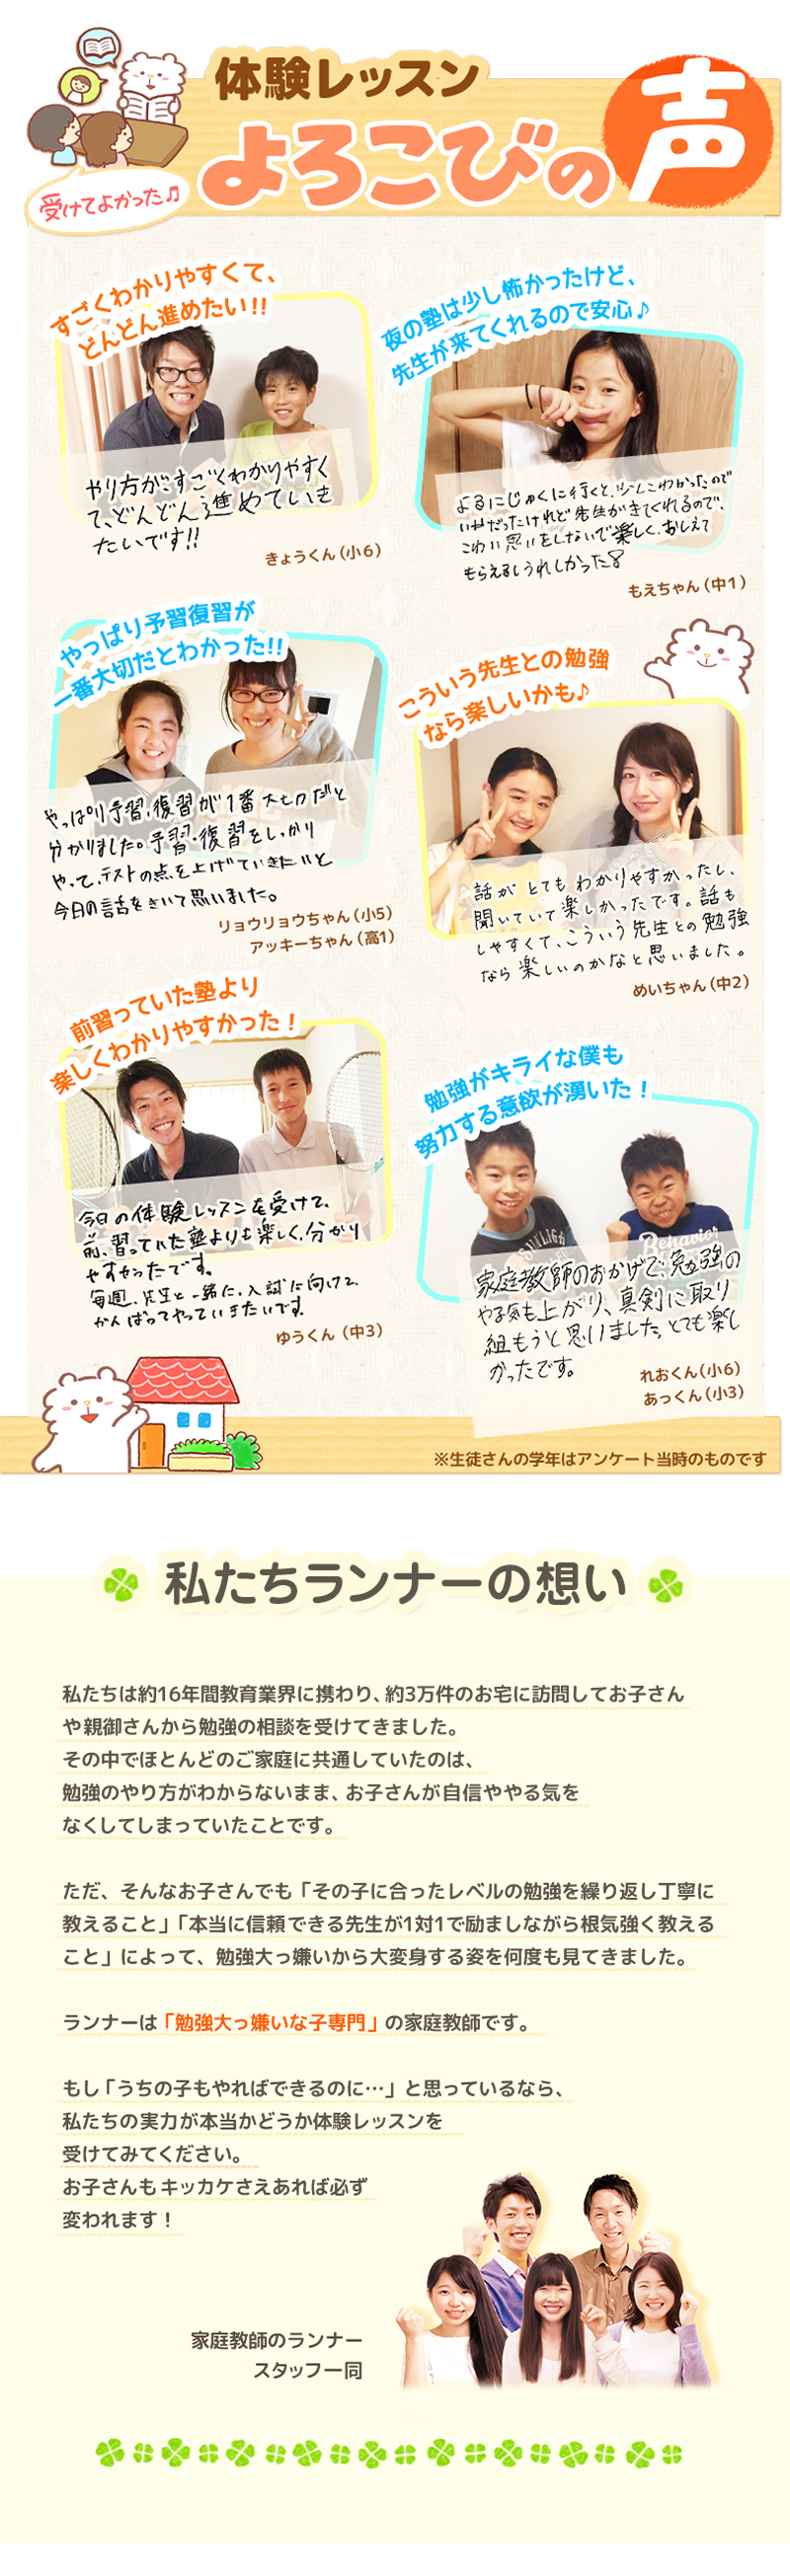 【家庭教師-栃木県-那須町のお客様のページ】【画像が表示されない場合はページ下部に画像と同じ内容をテキストで掲載していますのでそちらをご覧ください。】